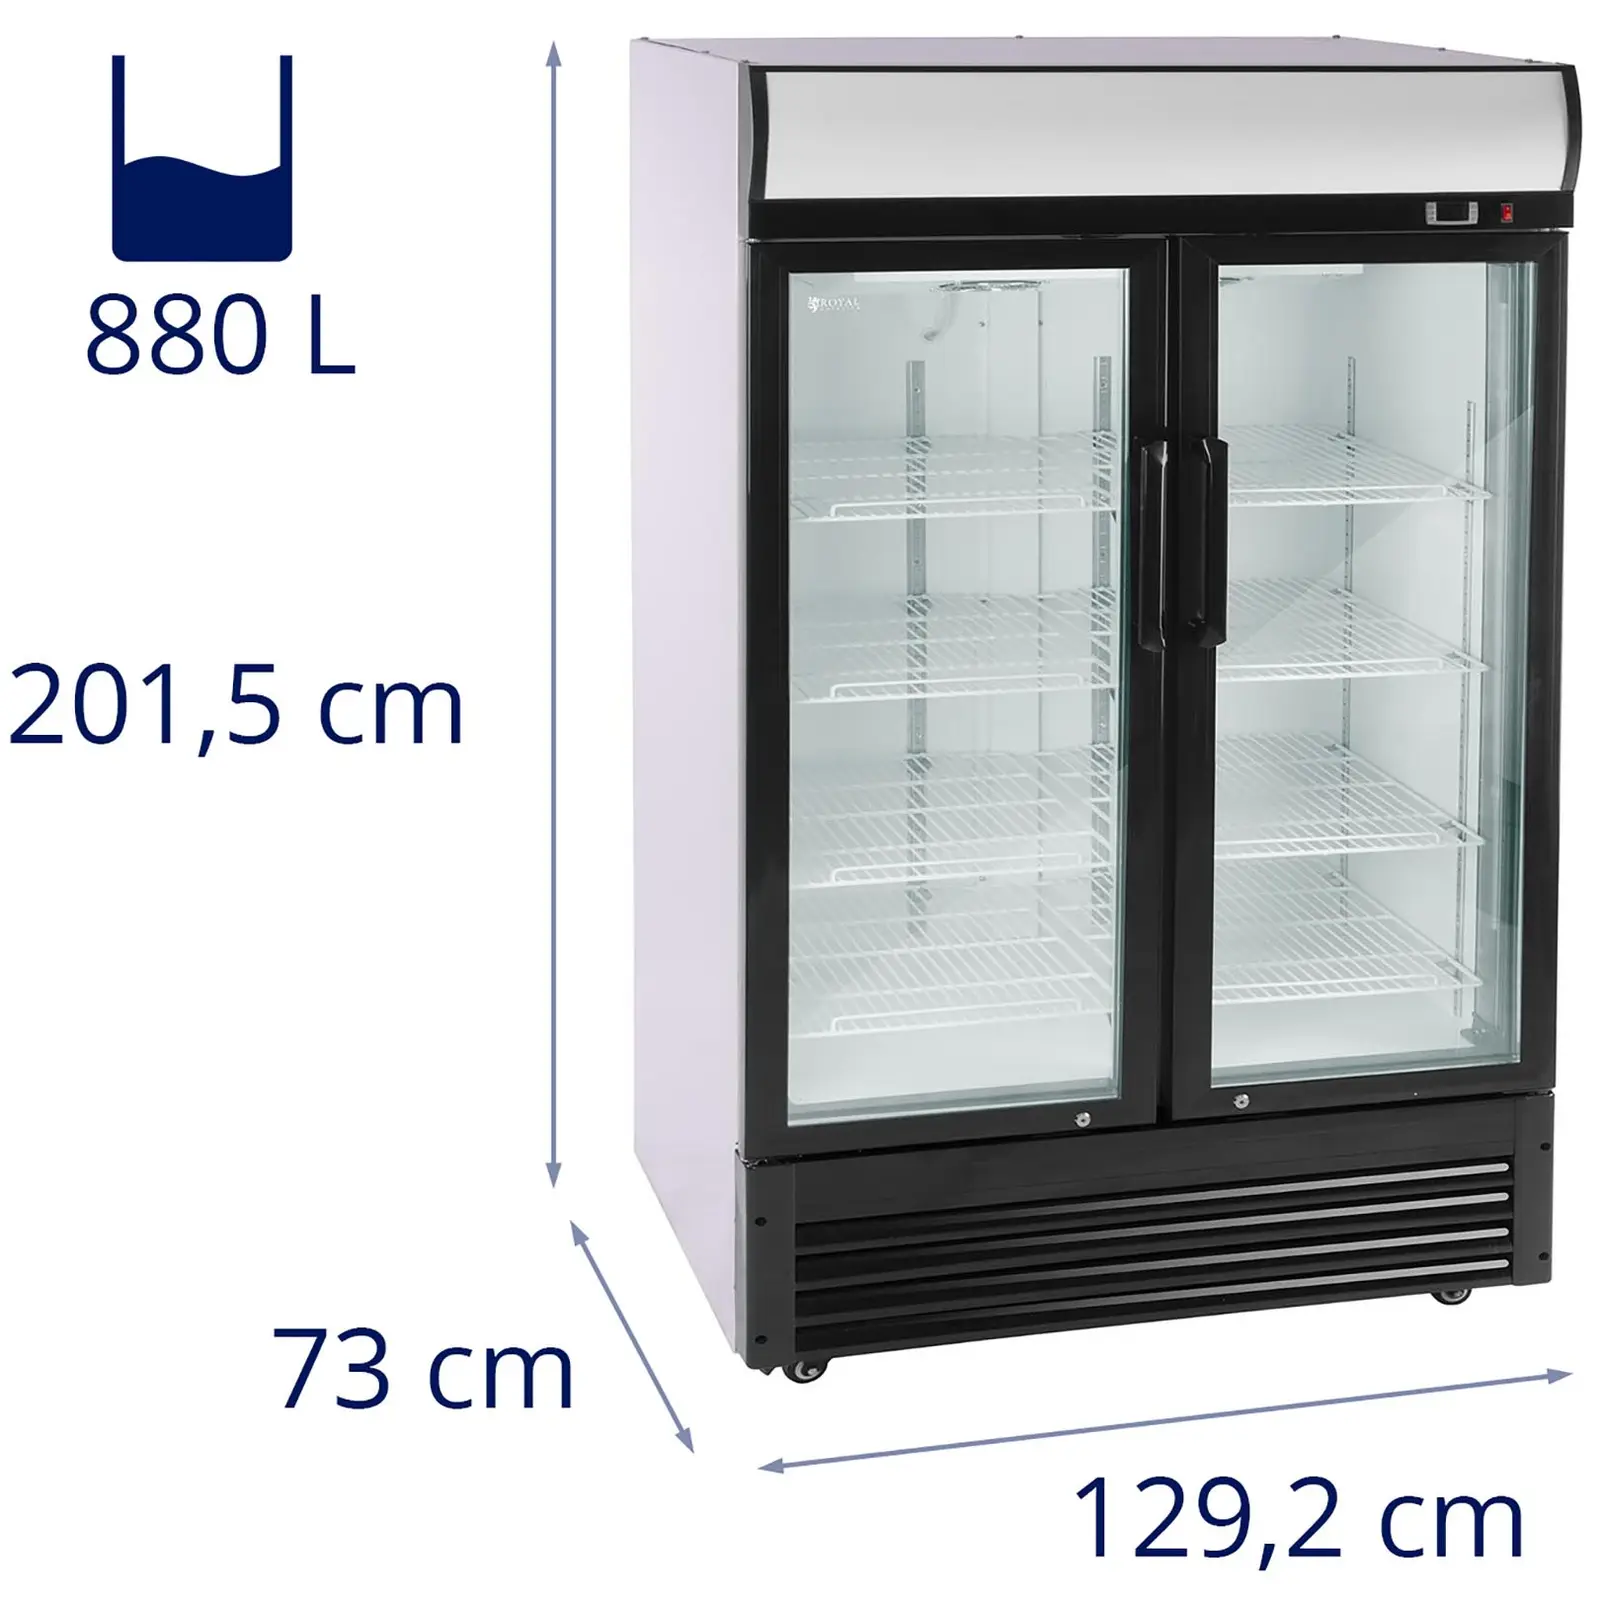 Arca refrigeradora - 880 l